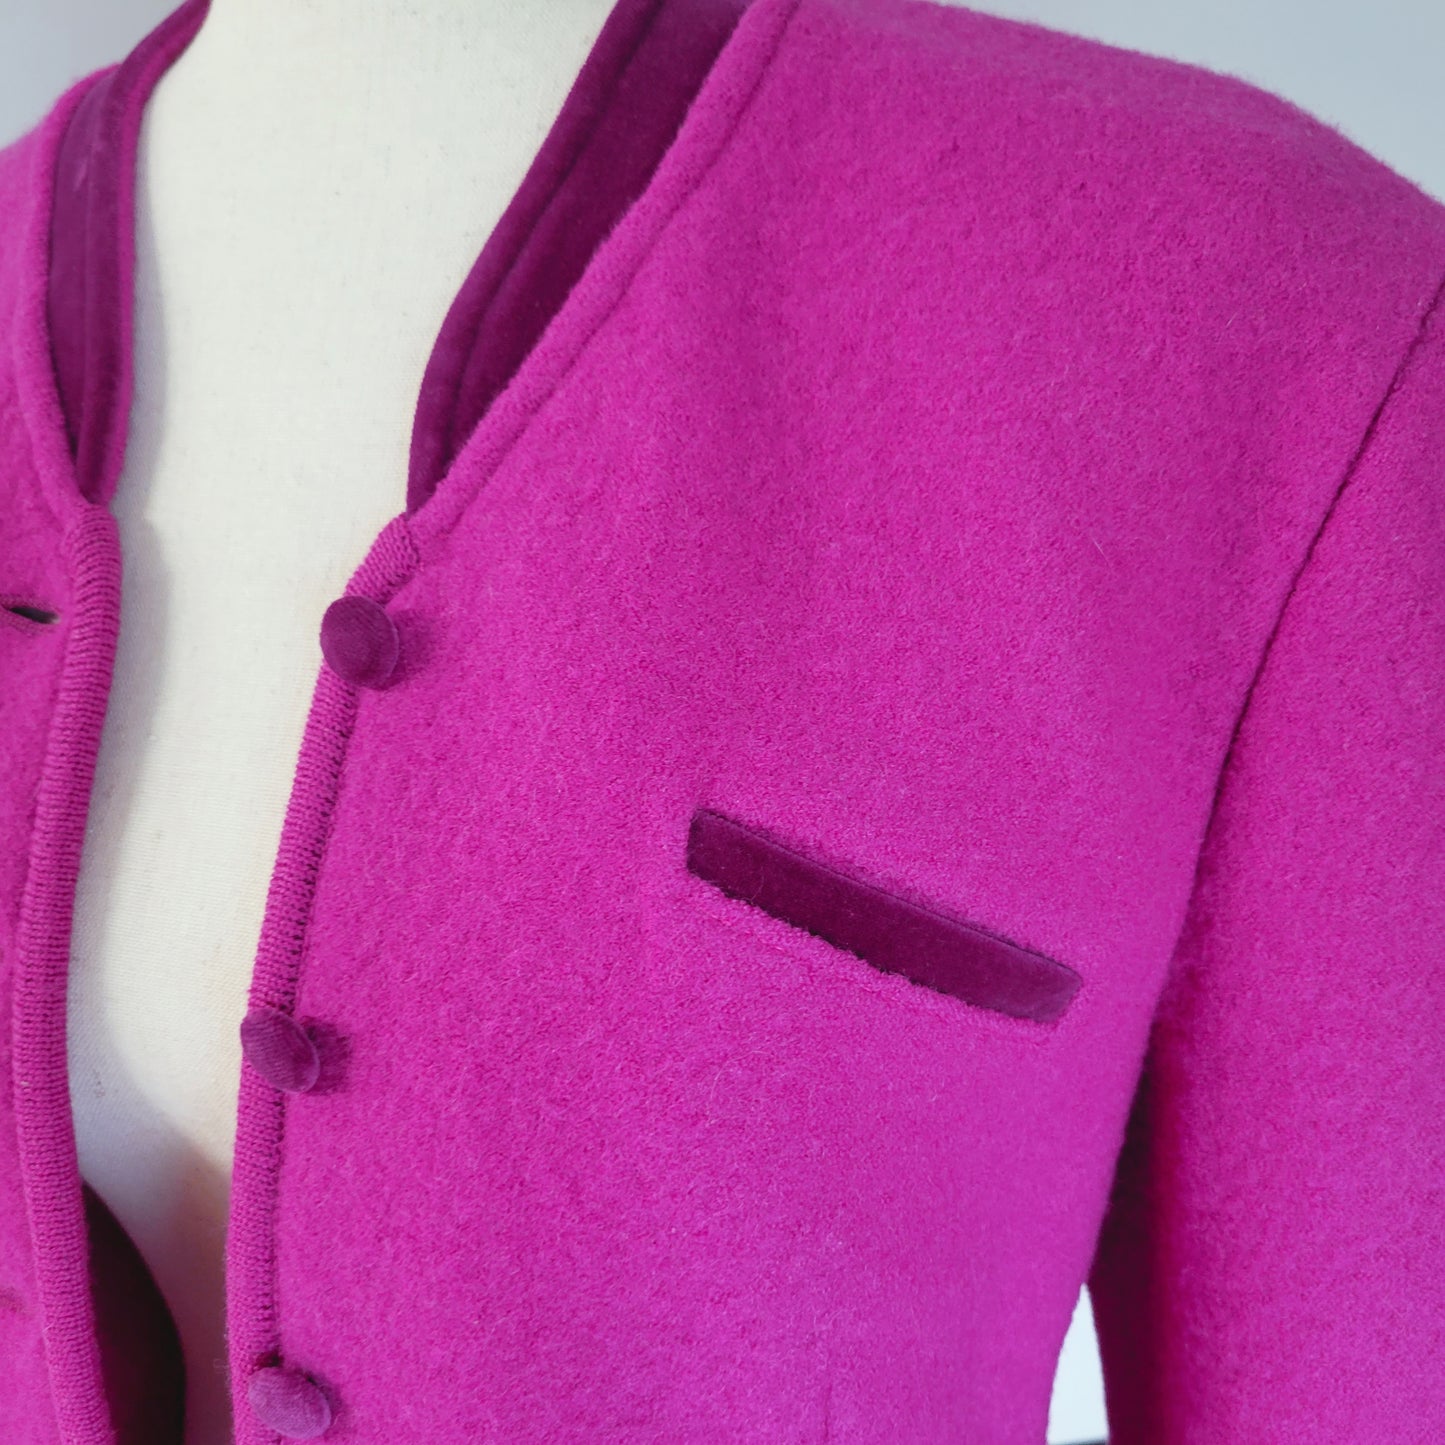 Geiger Vintage Wool Cropped Blazer with Velvet Trim - medium